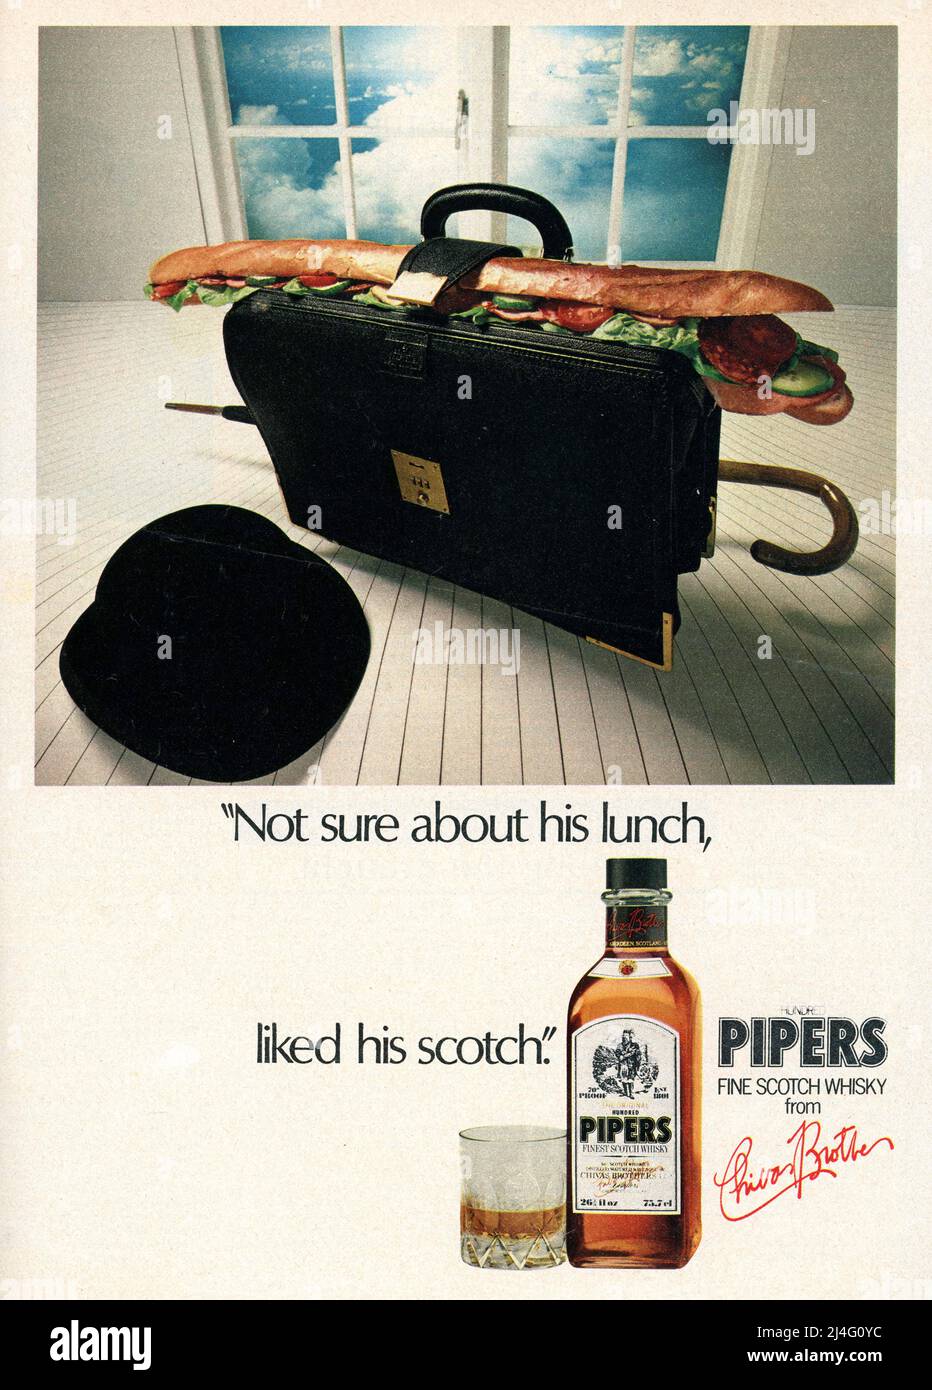 Magazine advert per 100 Pipers Scotch Whisky, con un cappello bowler e breve caso è chiaramente rivolto agli uomini d'affari, cappelli bowler sono stati indossati dai signori conservatori della città fino agli anni '90. Regno Unito 27 maggio 1979 Foto Stock